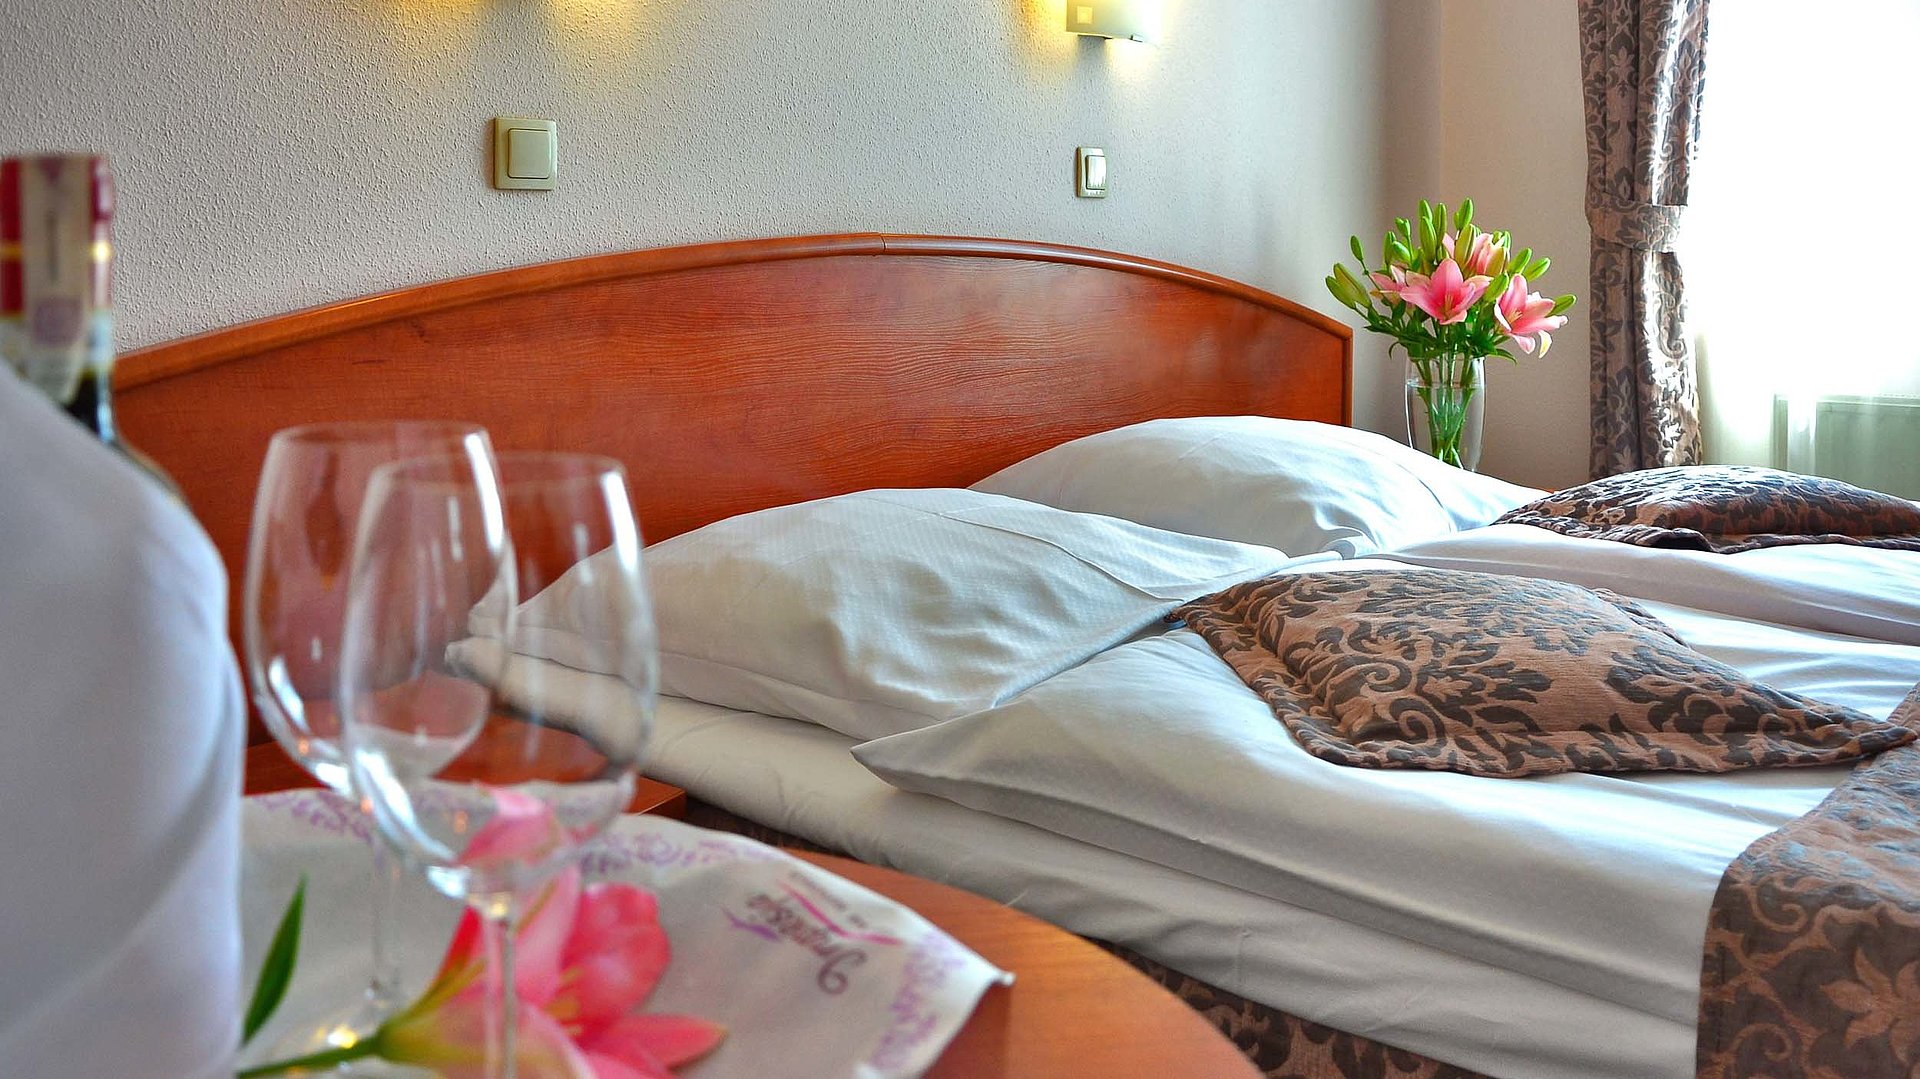 Pauschalangebot für eine Woche in Kempten im Allgäu - im Hotelzimmer von Gardinen durchleuchtet; Weingläser auf Tisch und Blumenstrauß auf Nachttisch